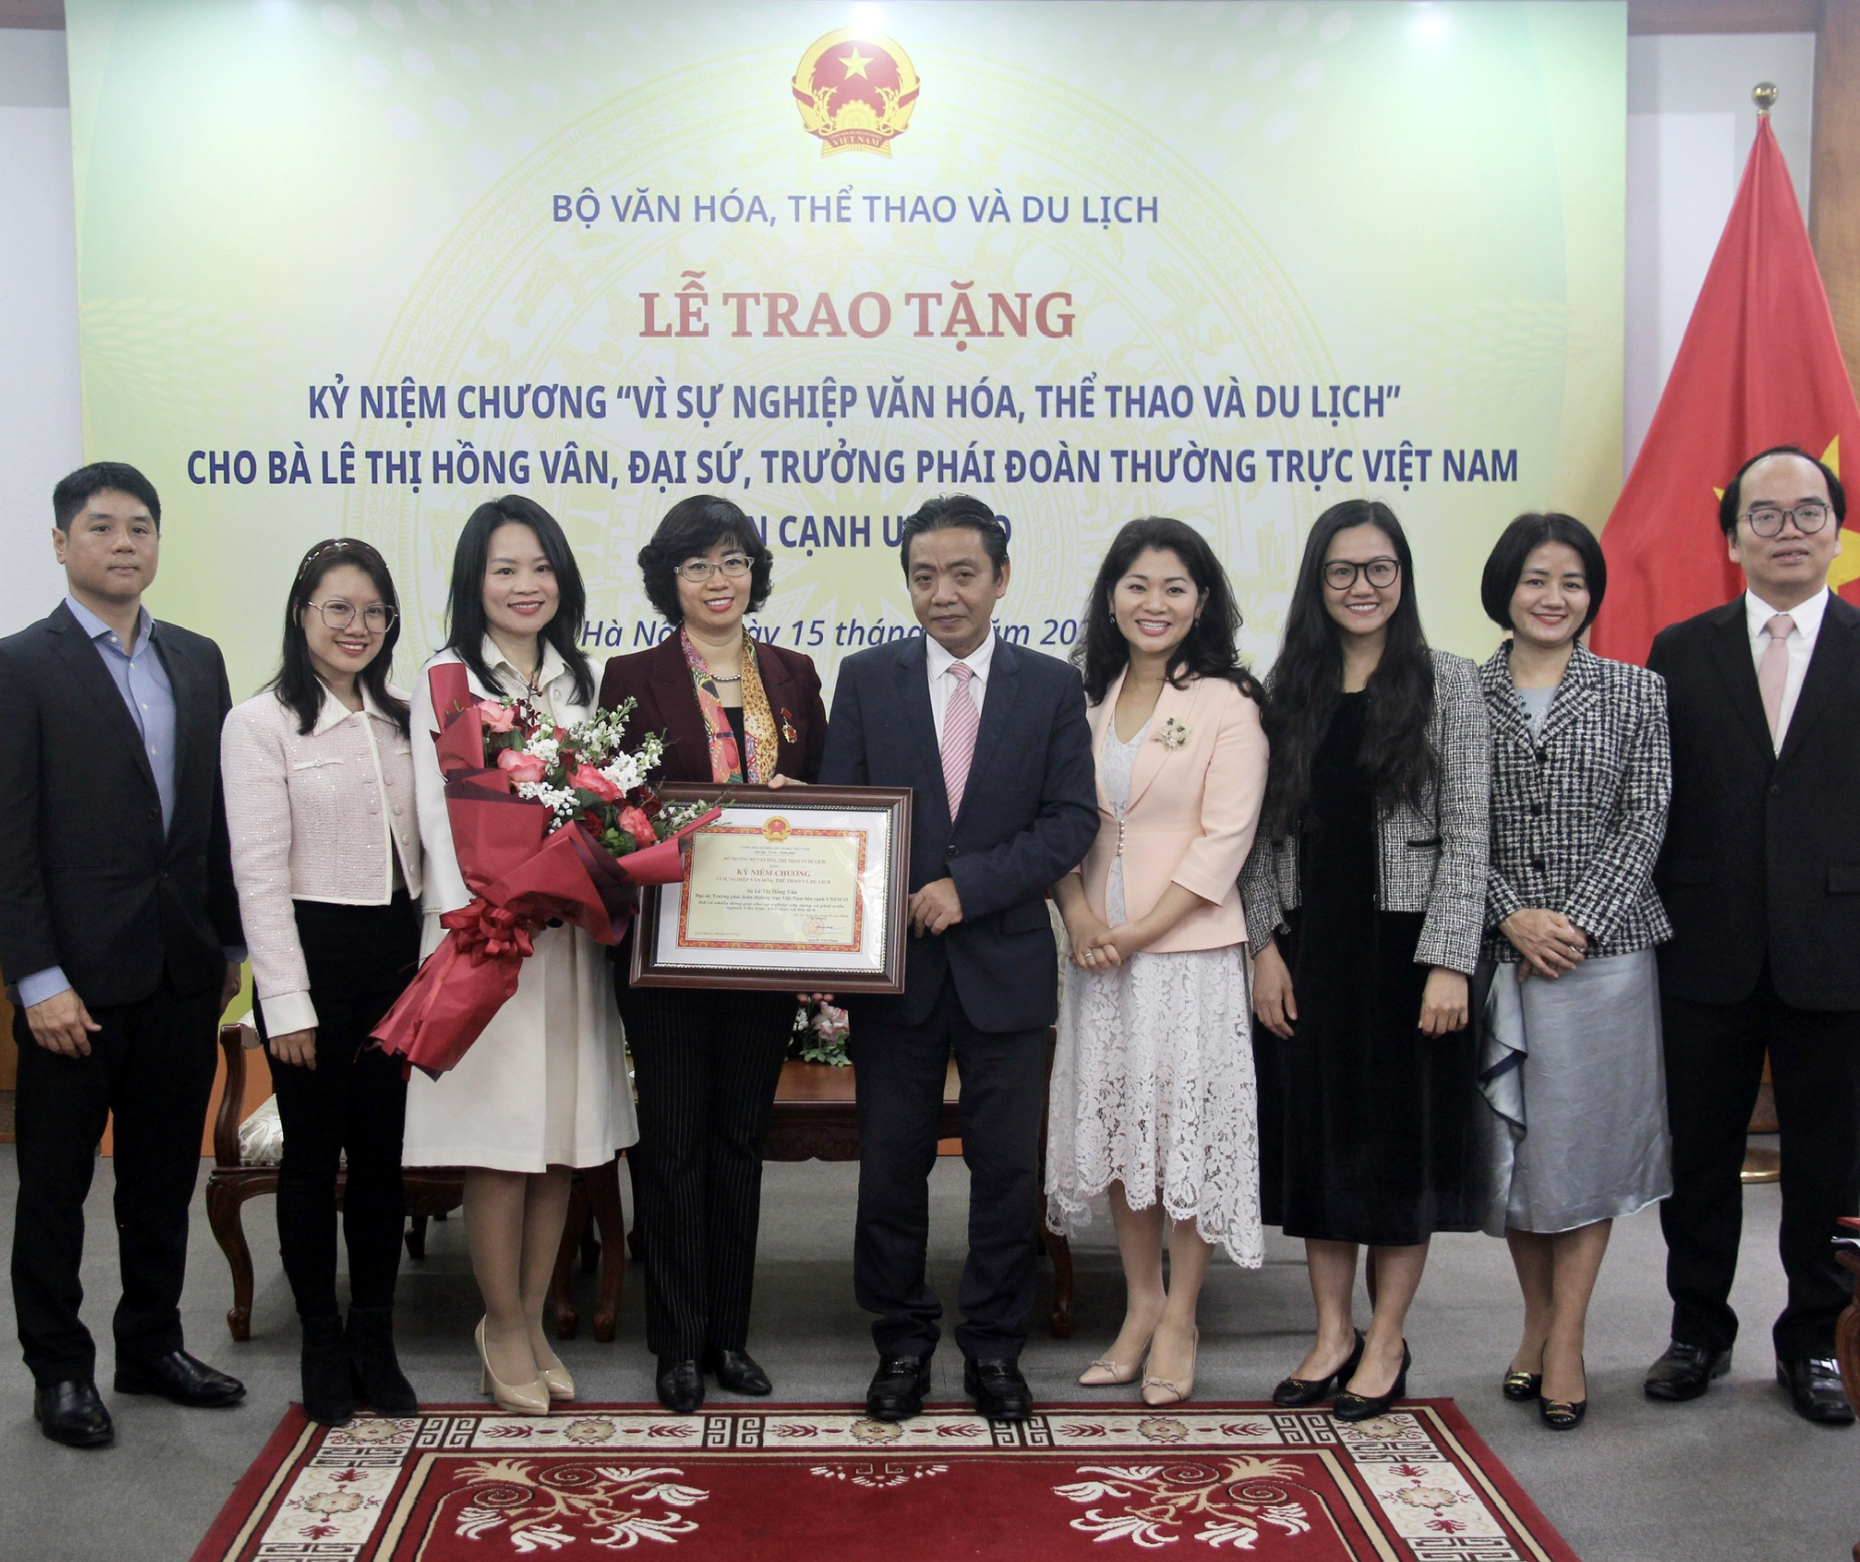 Bộ Văn hóa, Thể thao và Du lịch trao tặng Kỷ niệm chương “Vì sự nghiệp Văn hóa, Thể thao và Du lịch” cho Bà Lê Thị Hồng Vân, Đại sứ, Trưởng Phái đoàn Thường trực Việt Nam bên cạnh UNESCO